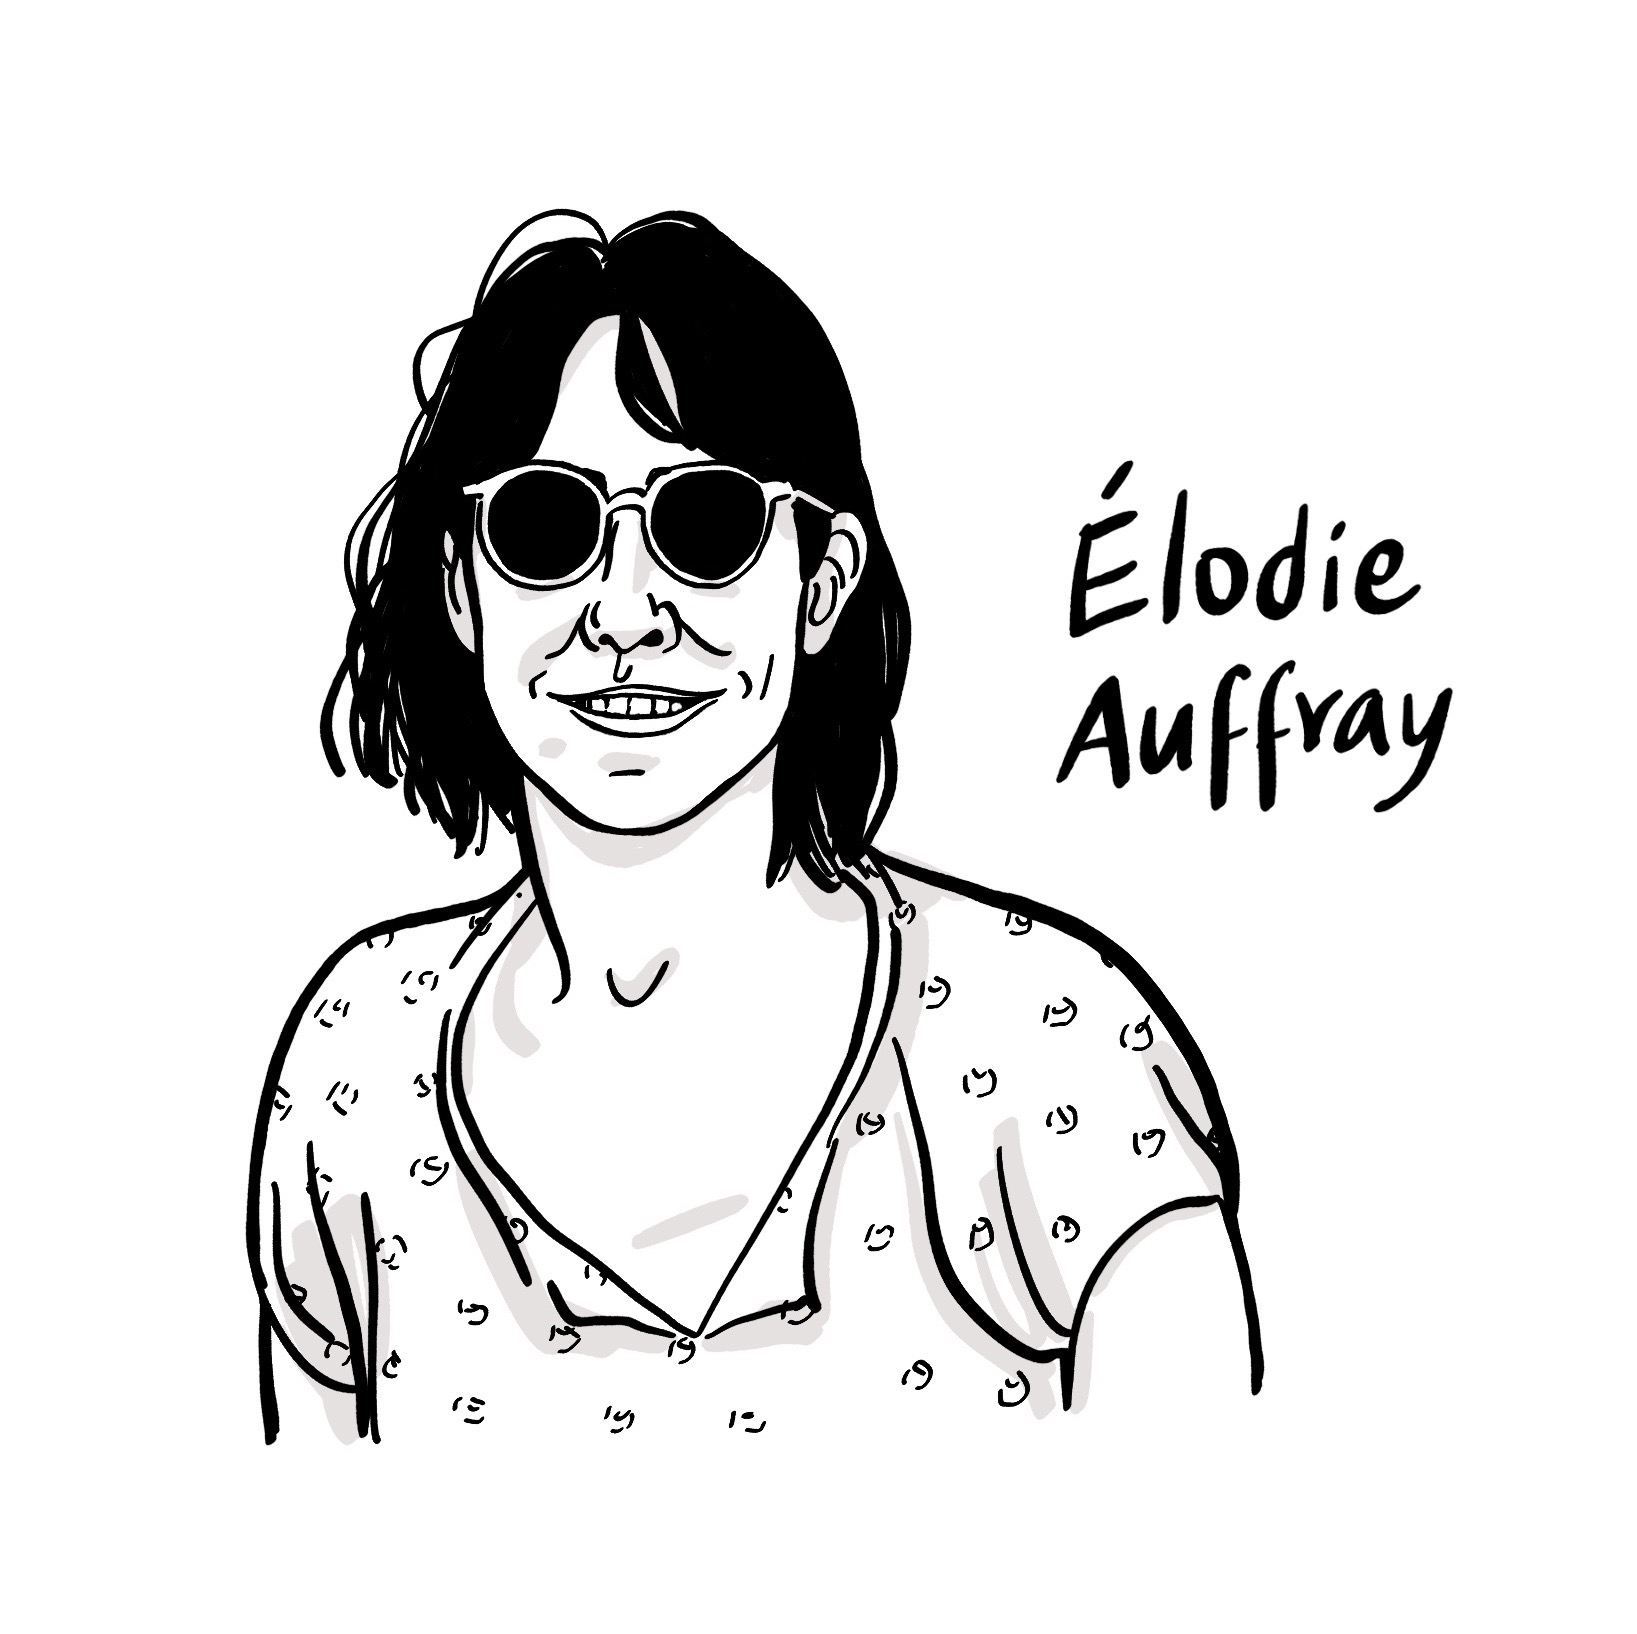 Elodie Auffray